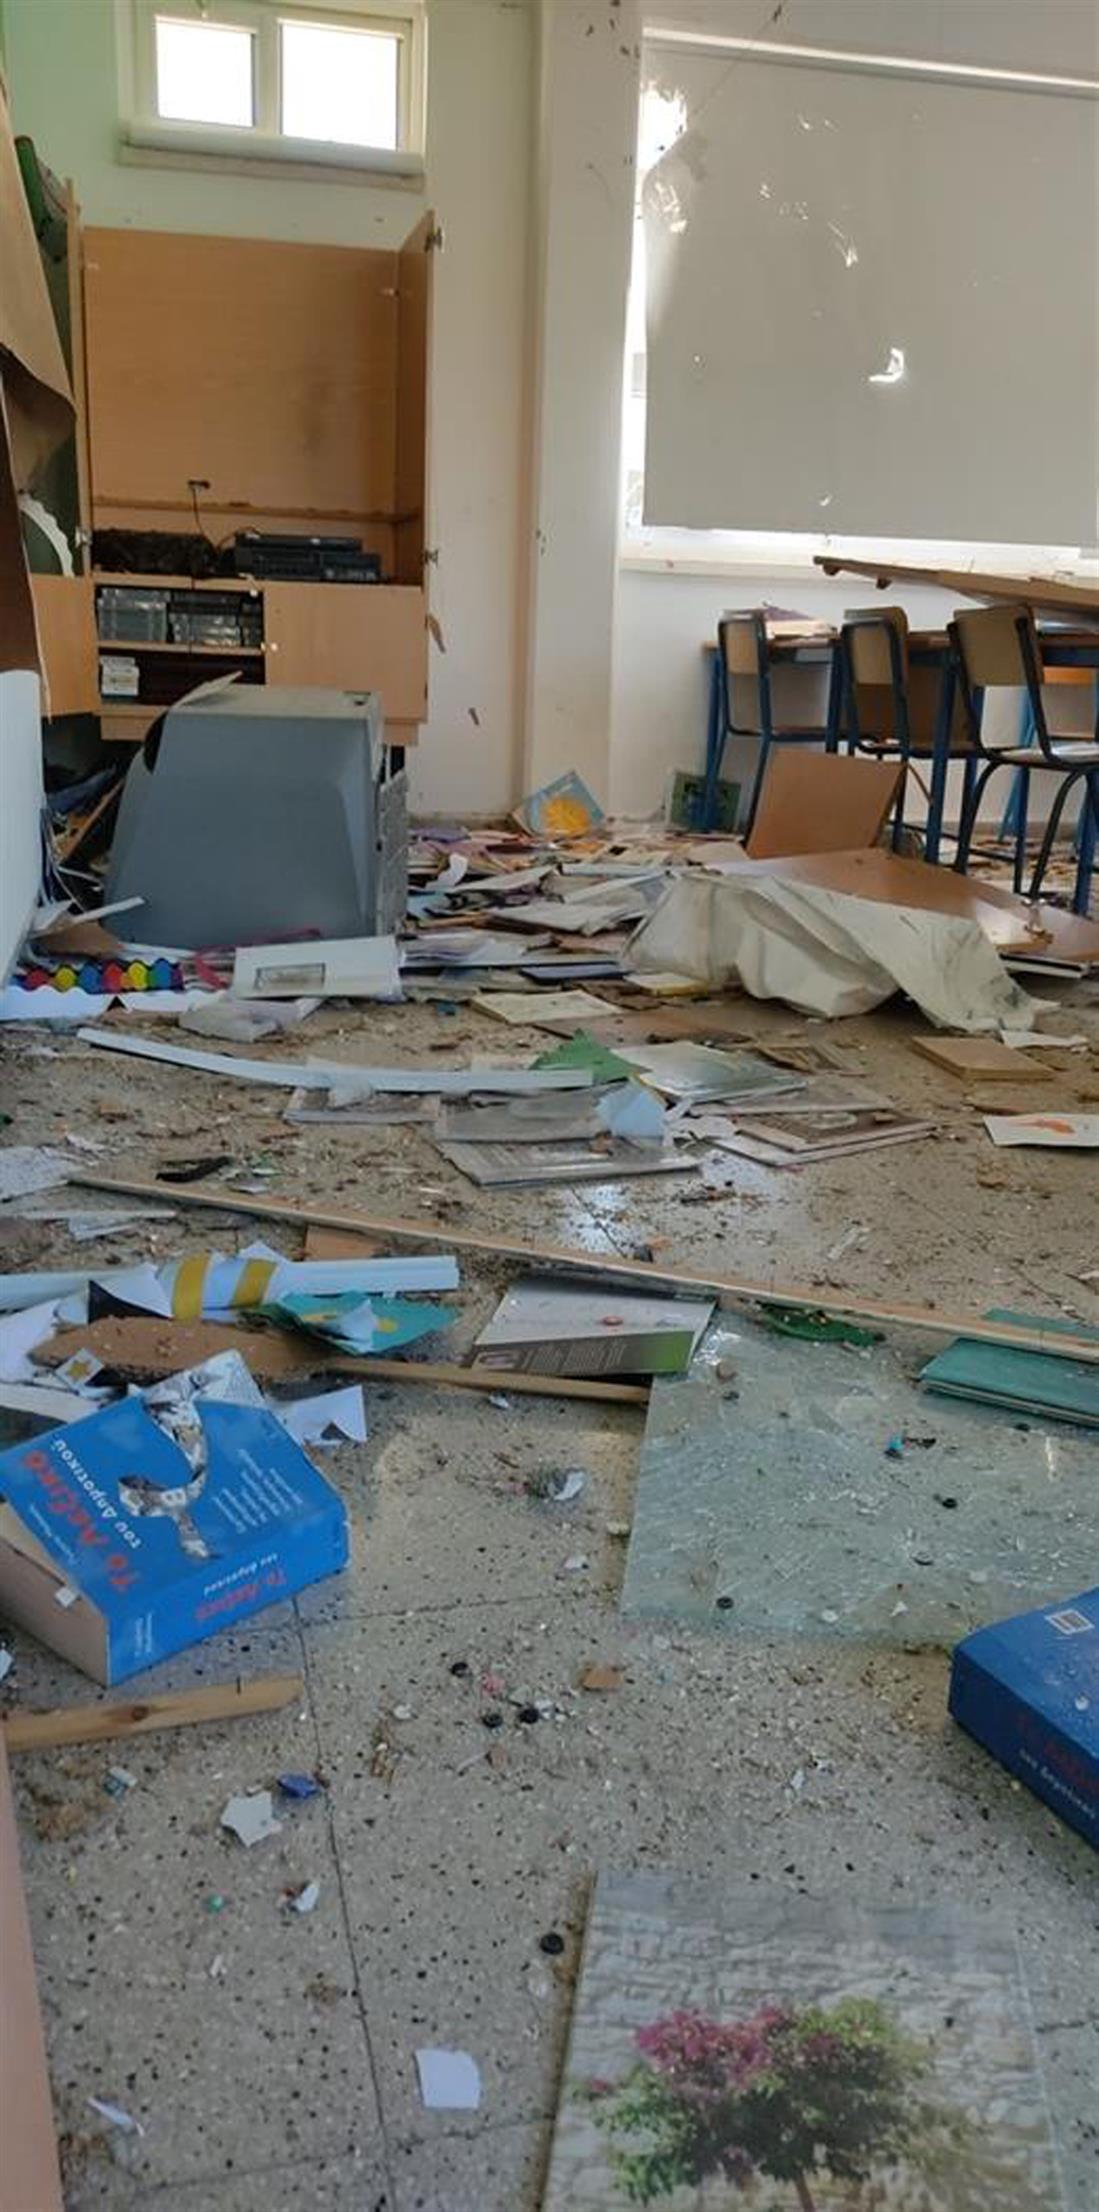 Έκρηξη - αίθουσα - δημοτικό σχολείο Ζακακίου